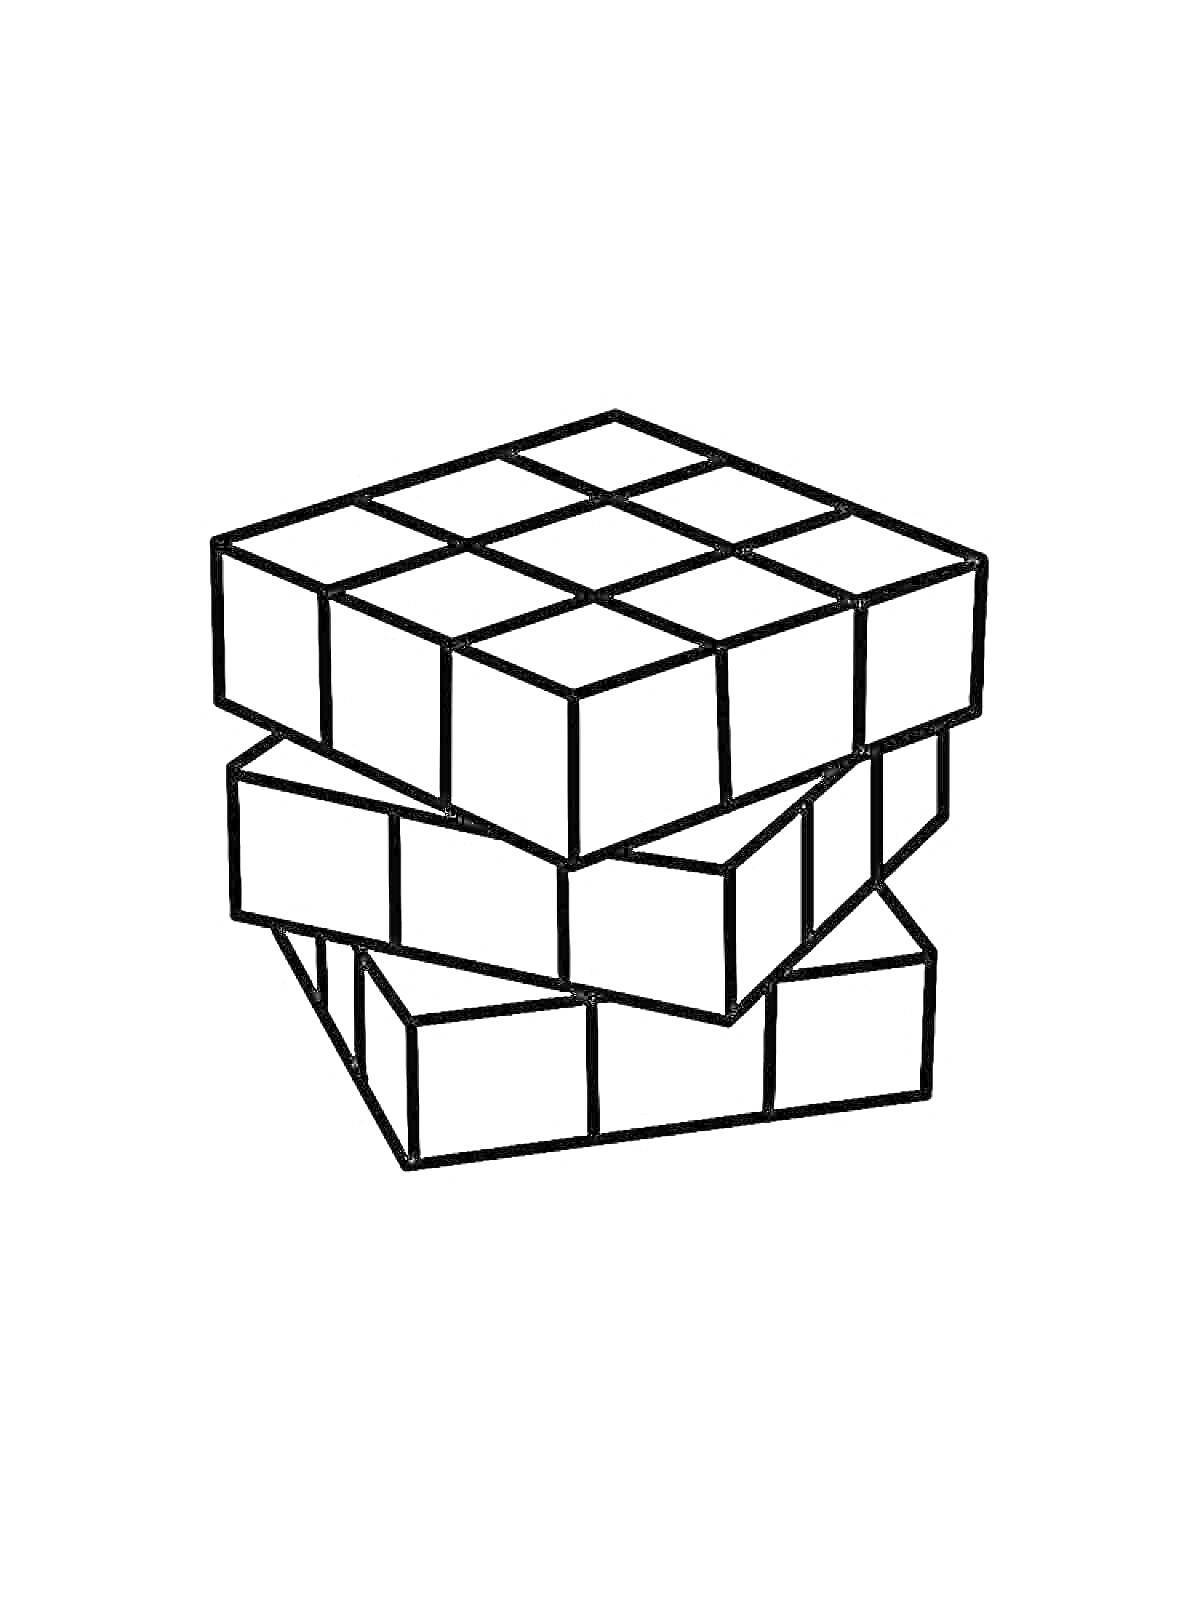 Изображение вращающегося Кубика Рубика с тремя поворотами